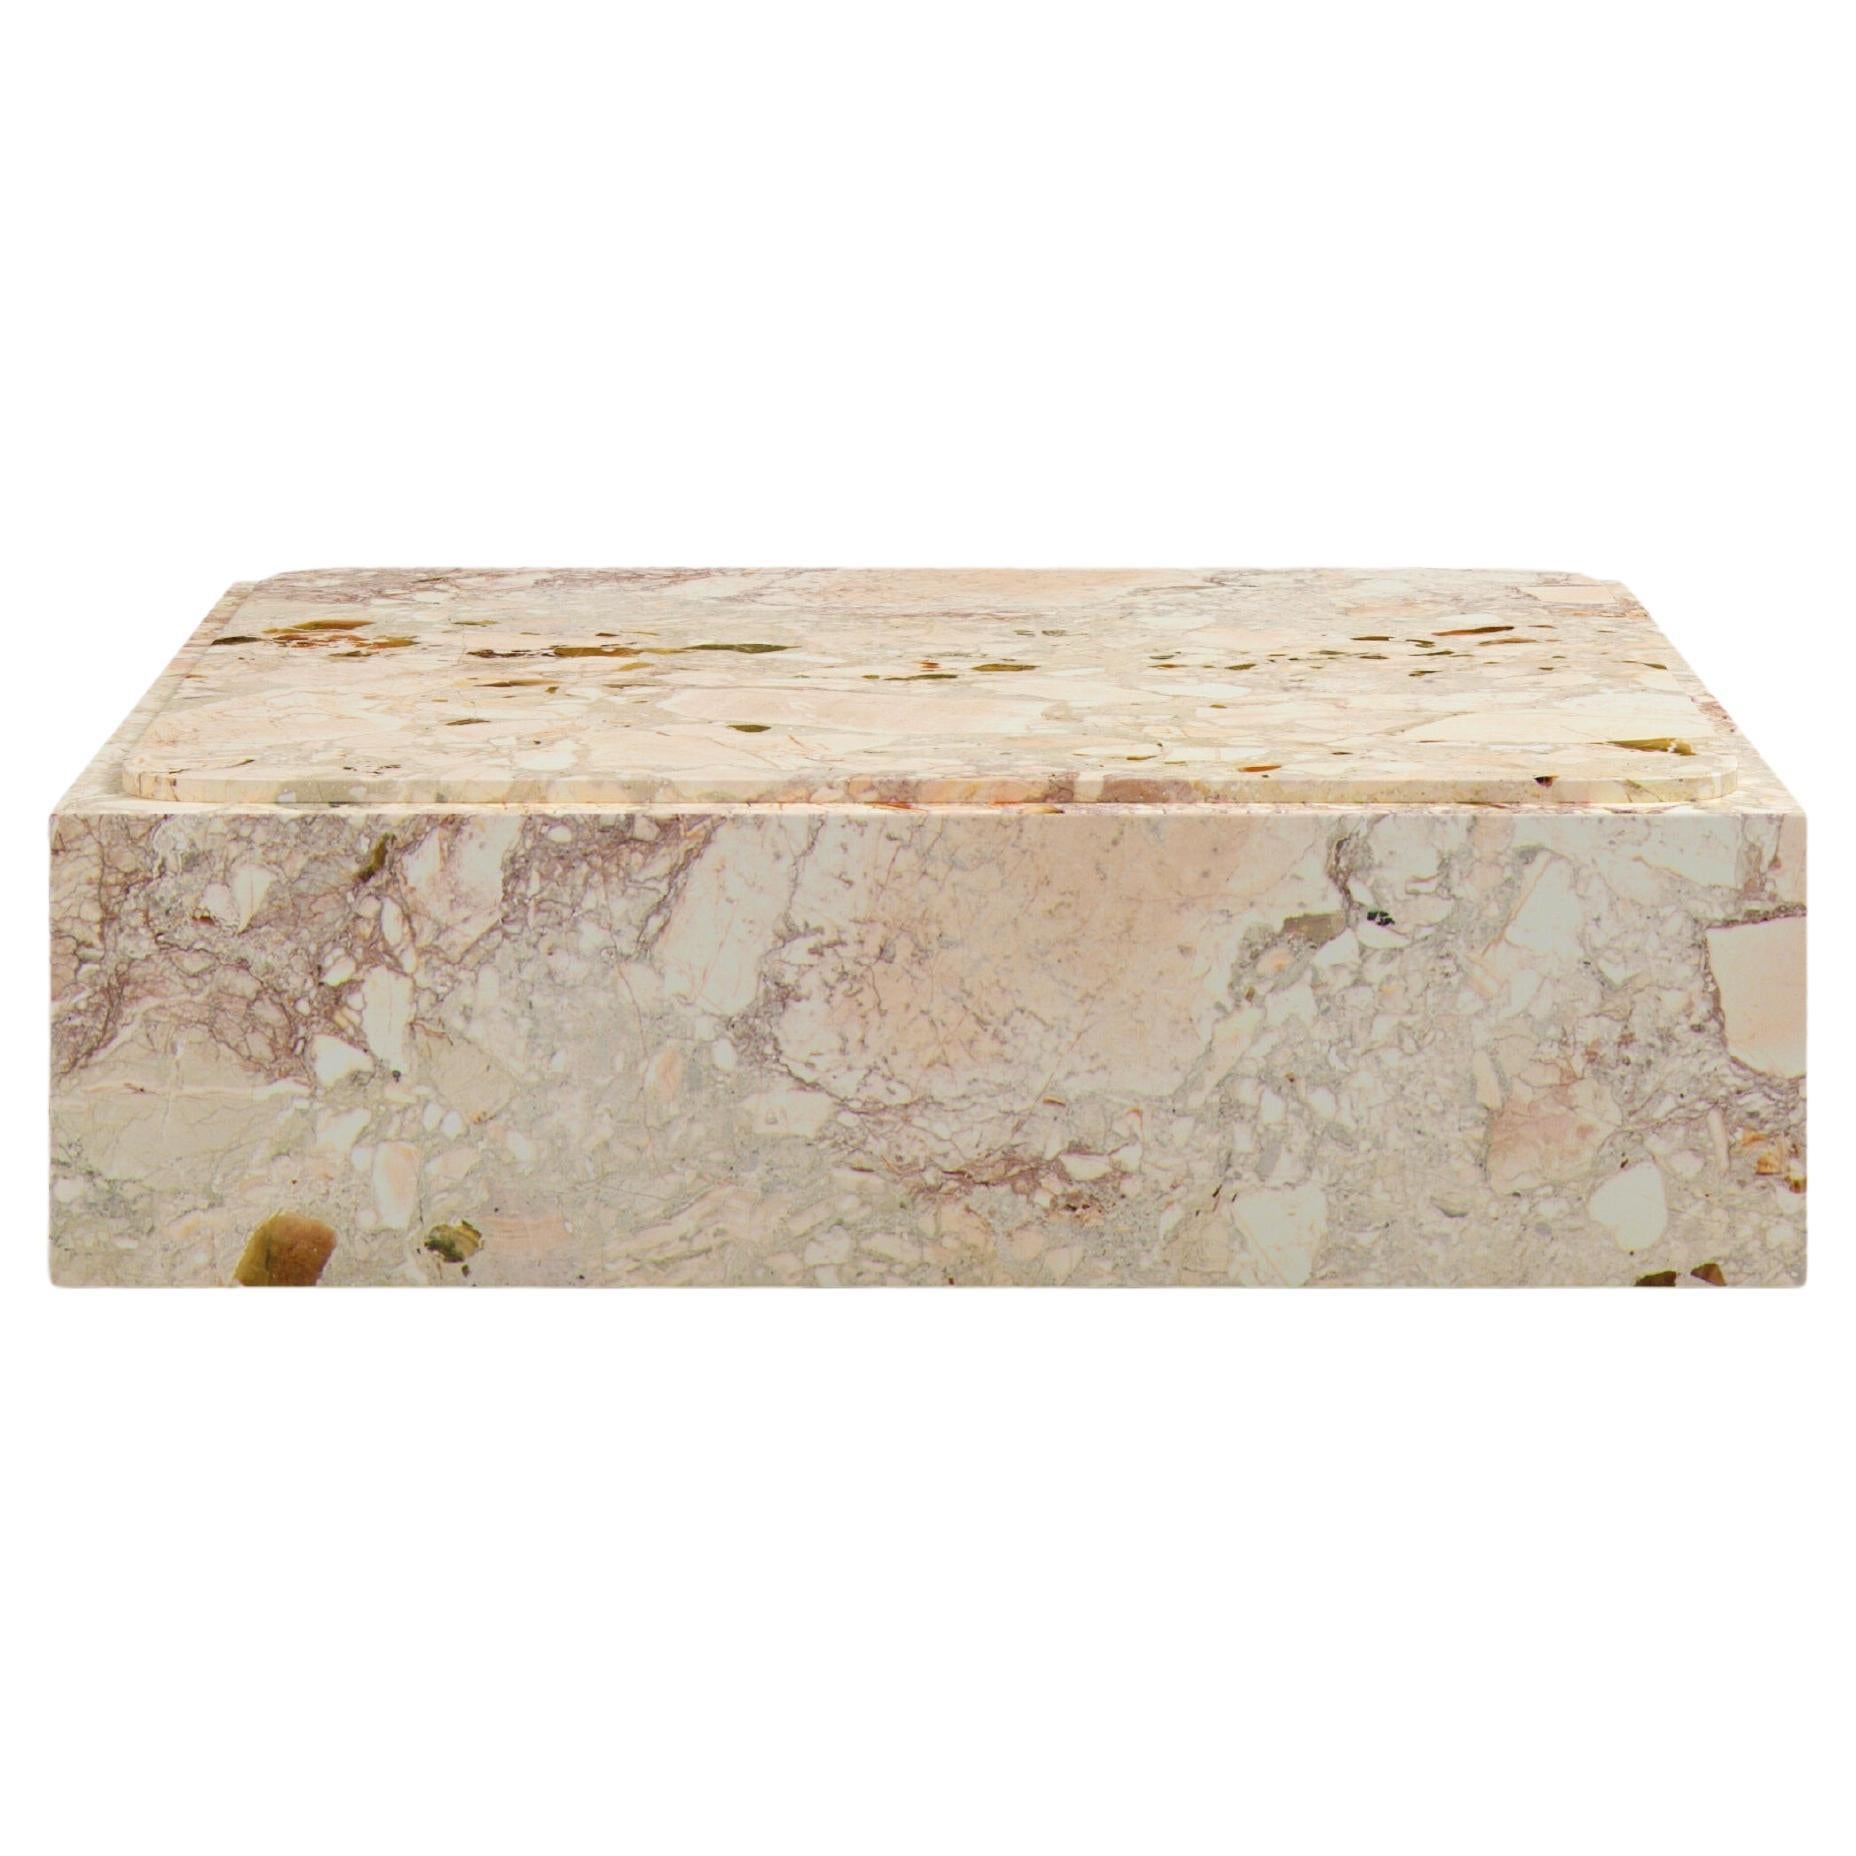 FORM(LA) Cubo Square Plinth Coffee Table 60”L x 60”W x 13”H Breccia Rosa Marble For Sale